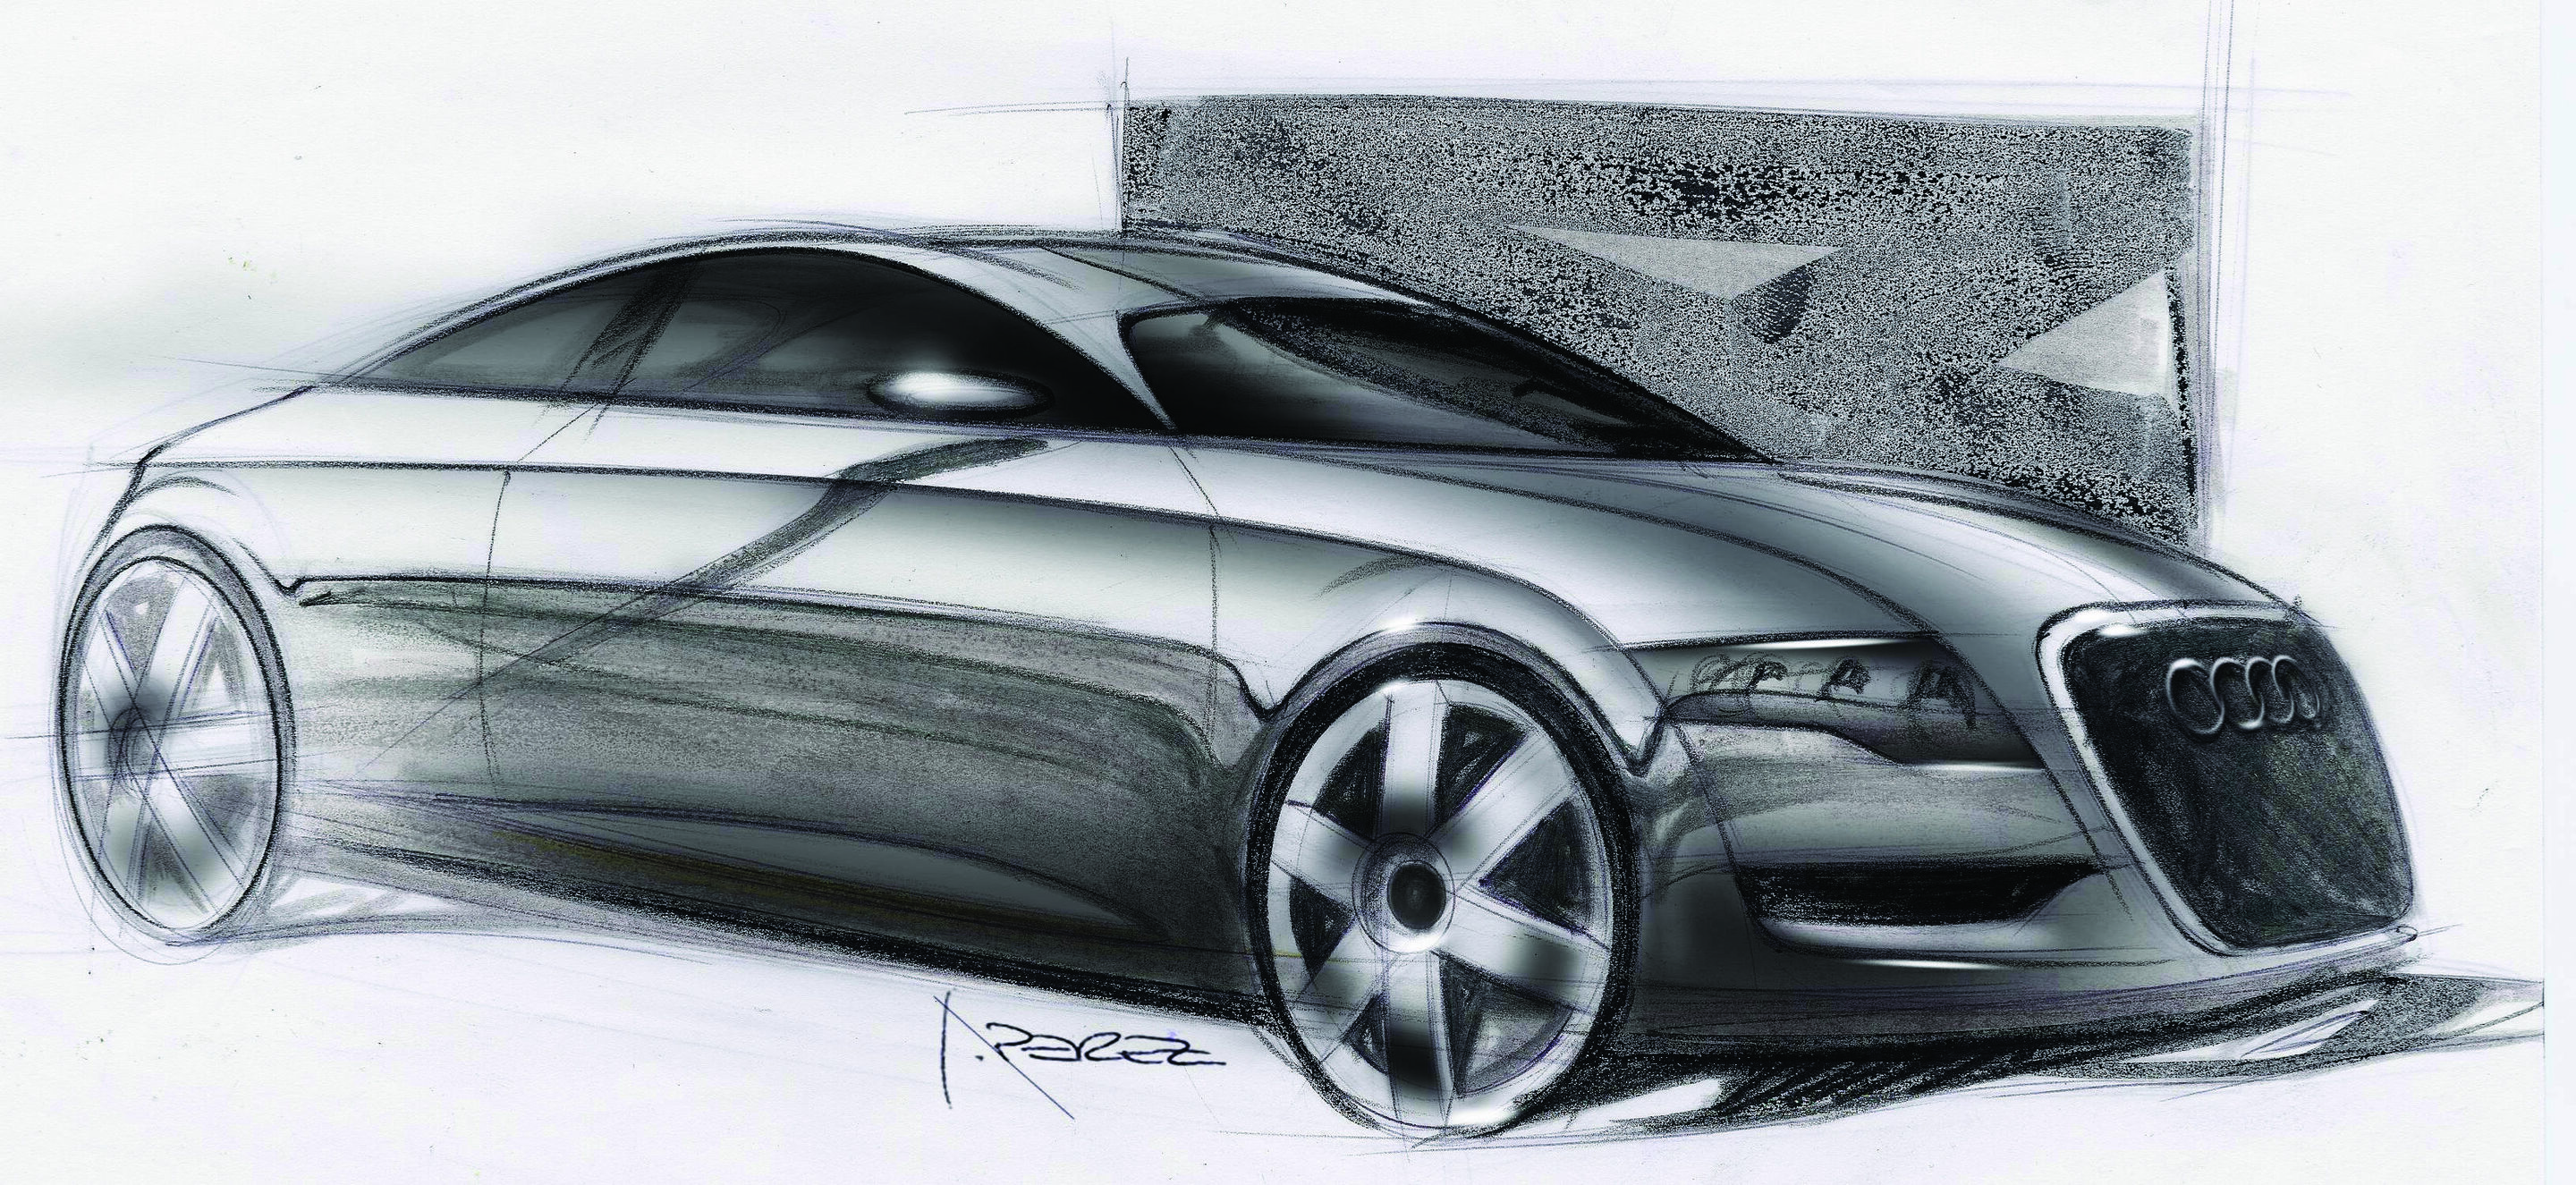 Audi Nuvolari quattro - design